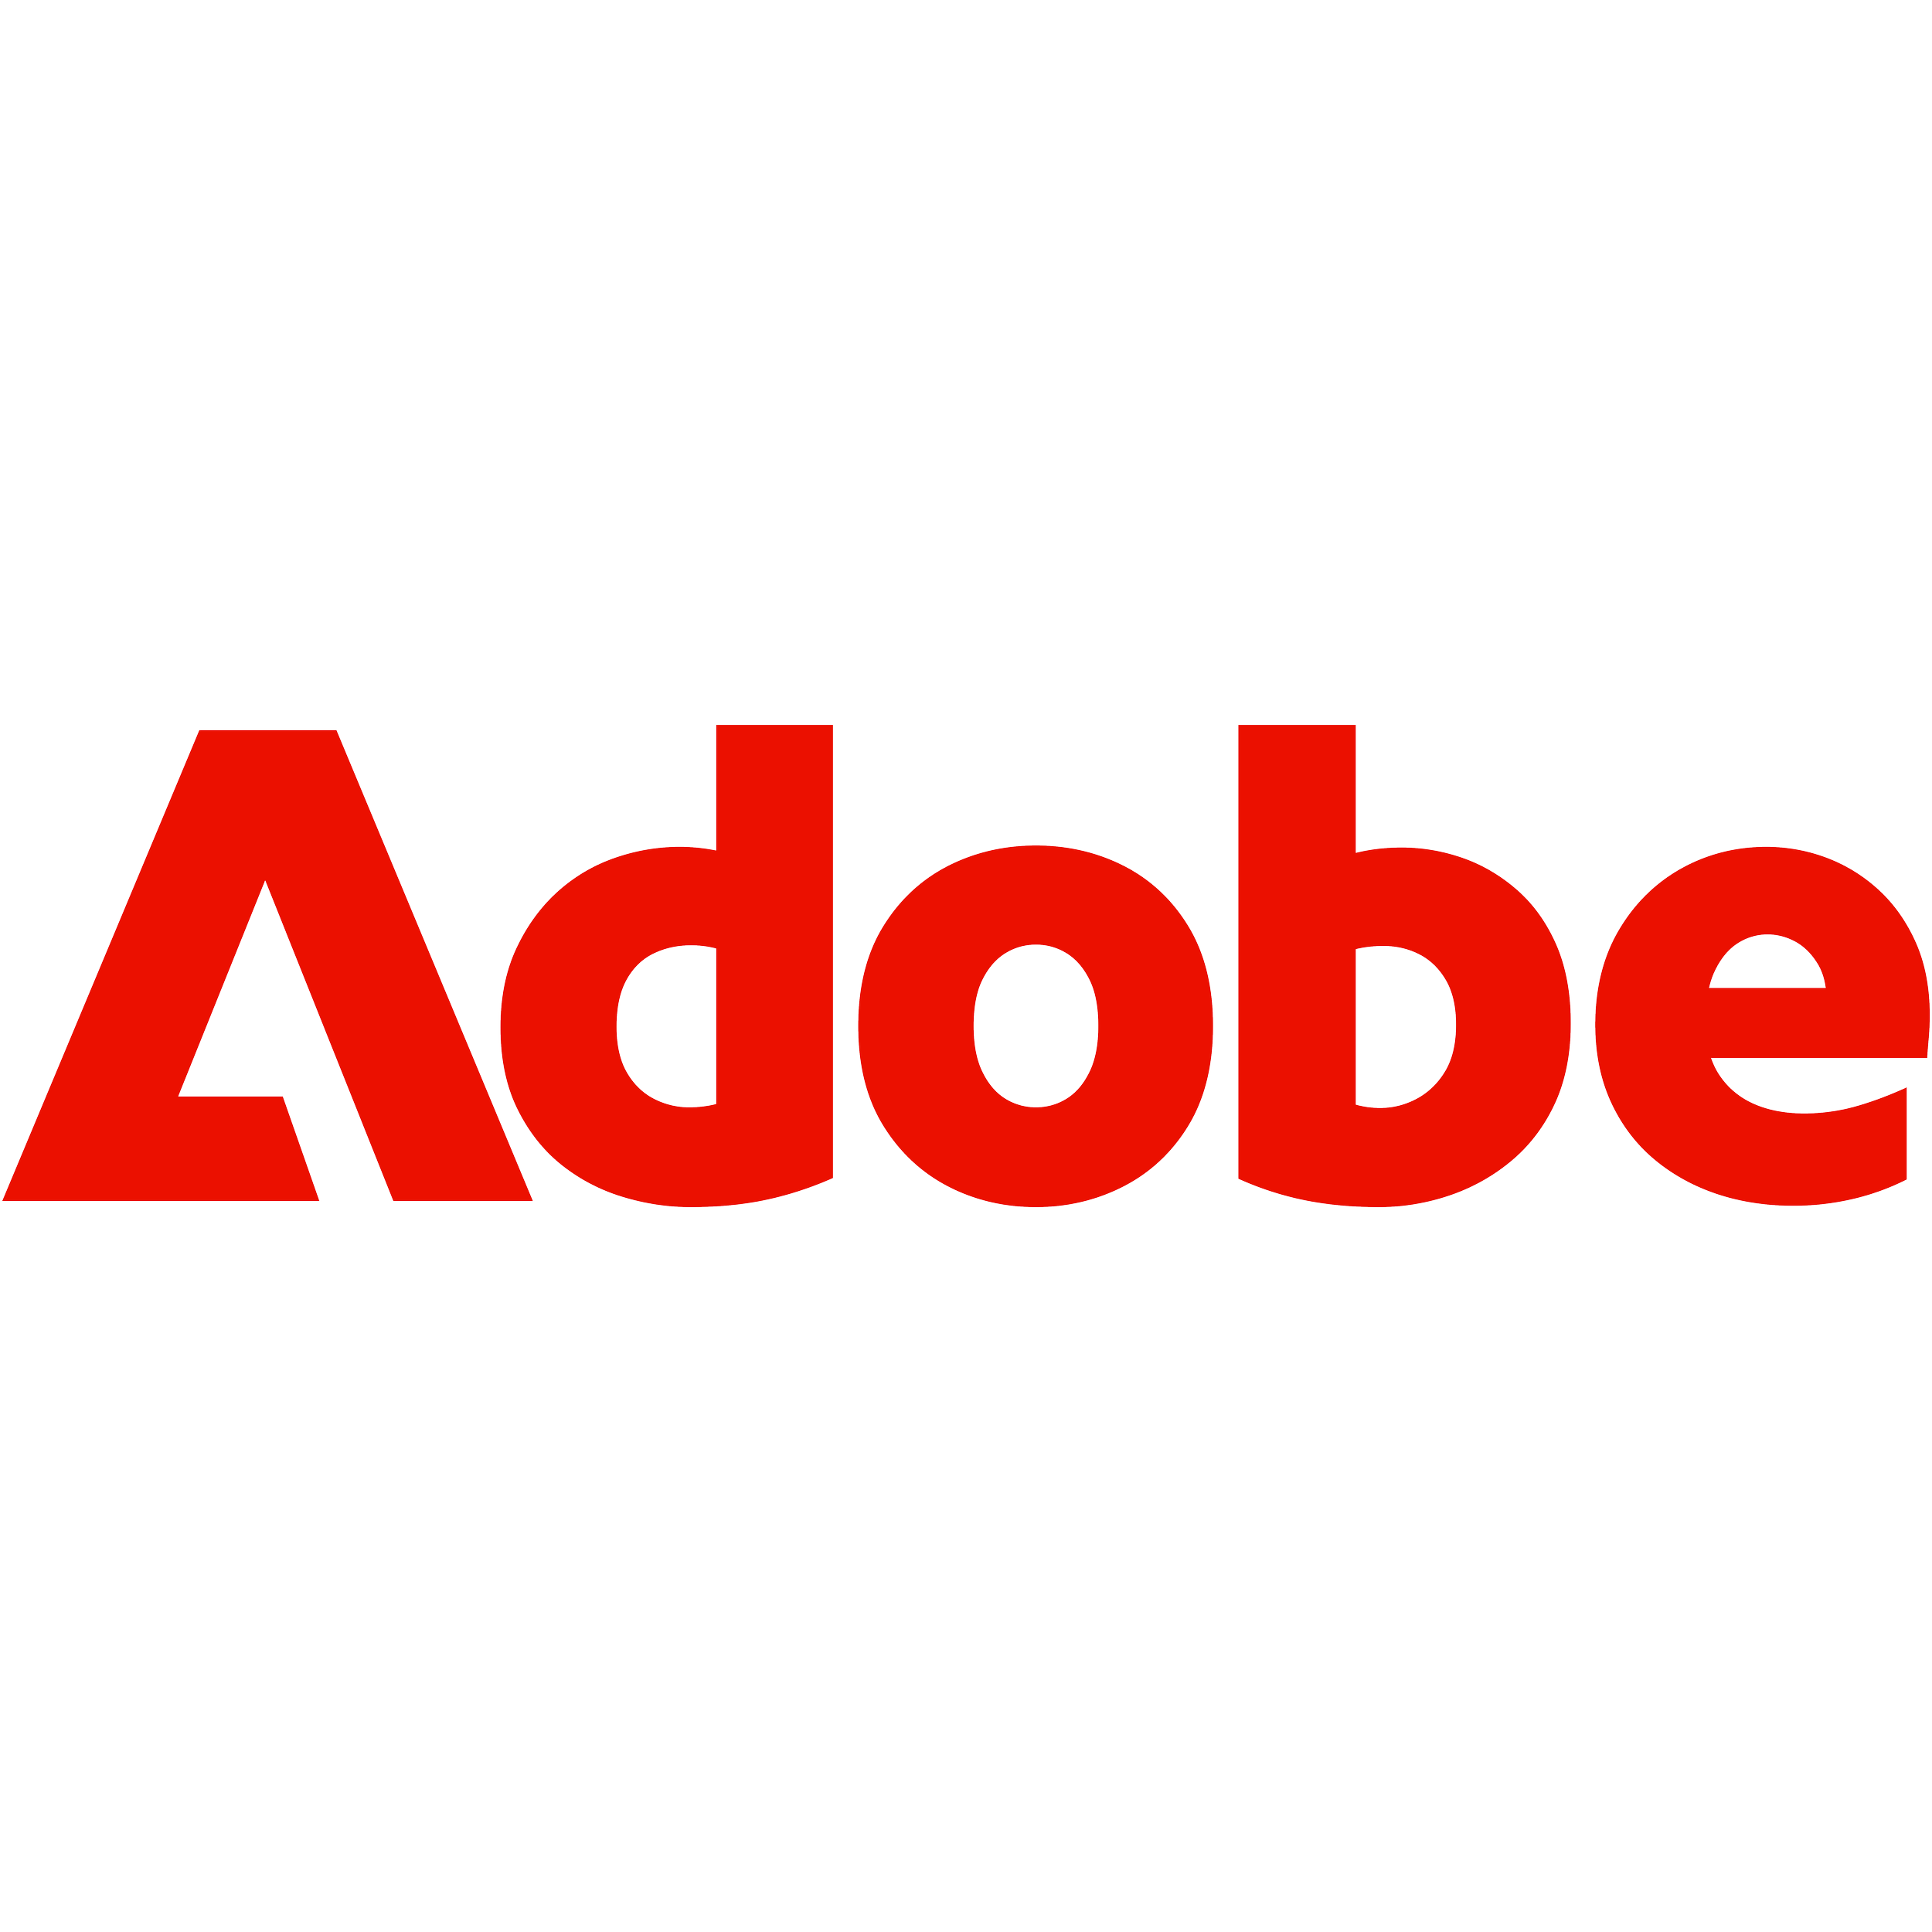 Adobe_Logo_Red.png